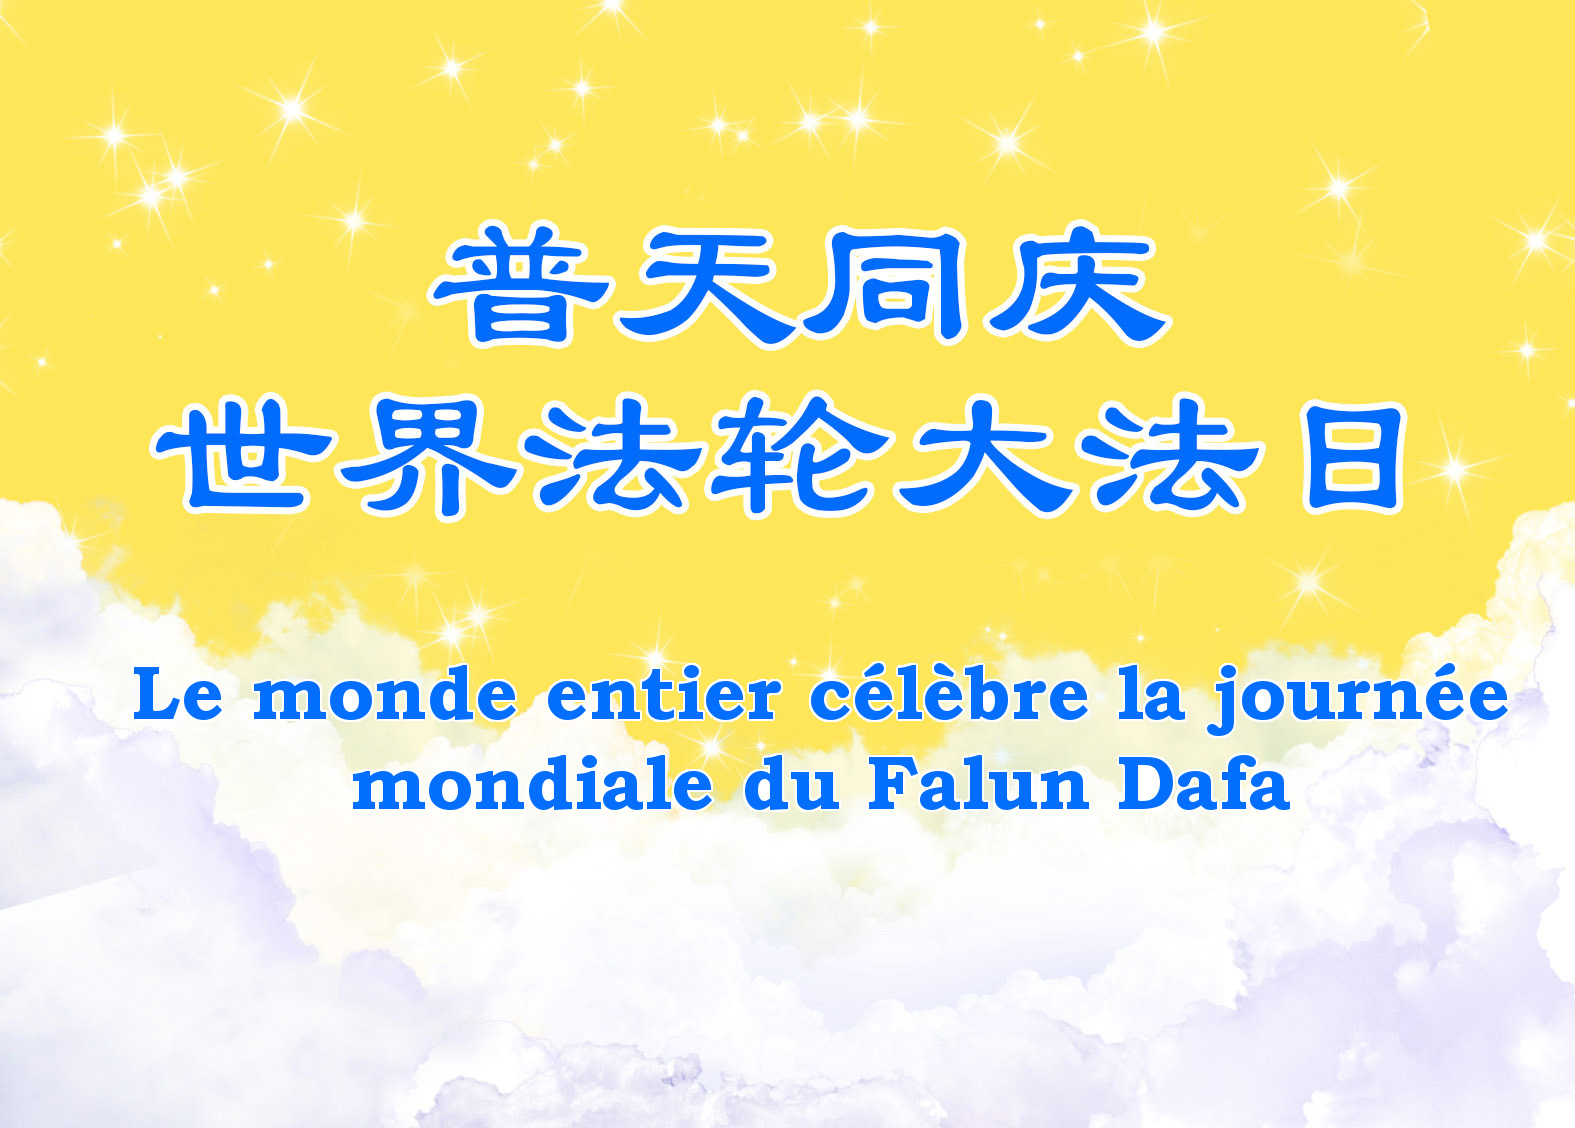 Image for article [Célébrer la Journée mondiale du Falun Dafa] Mon père centenaire retrouve sa jeunesse